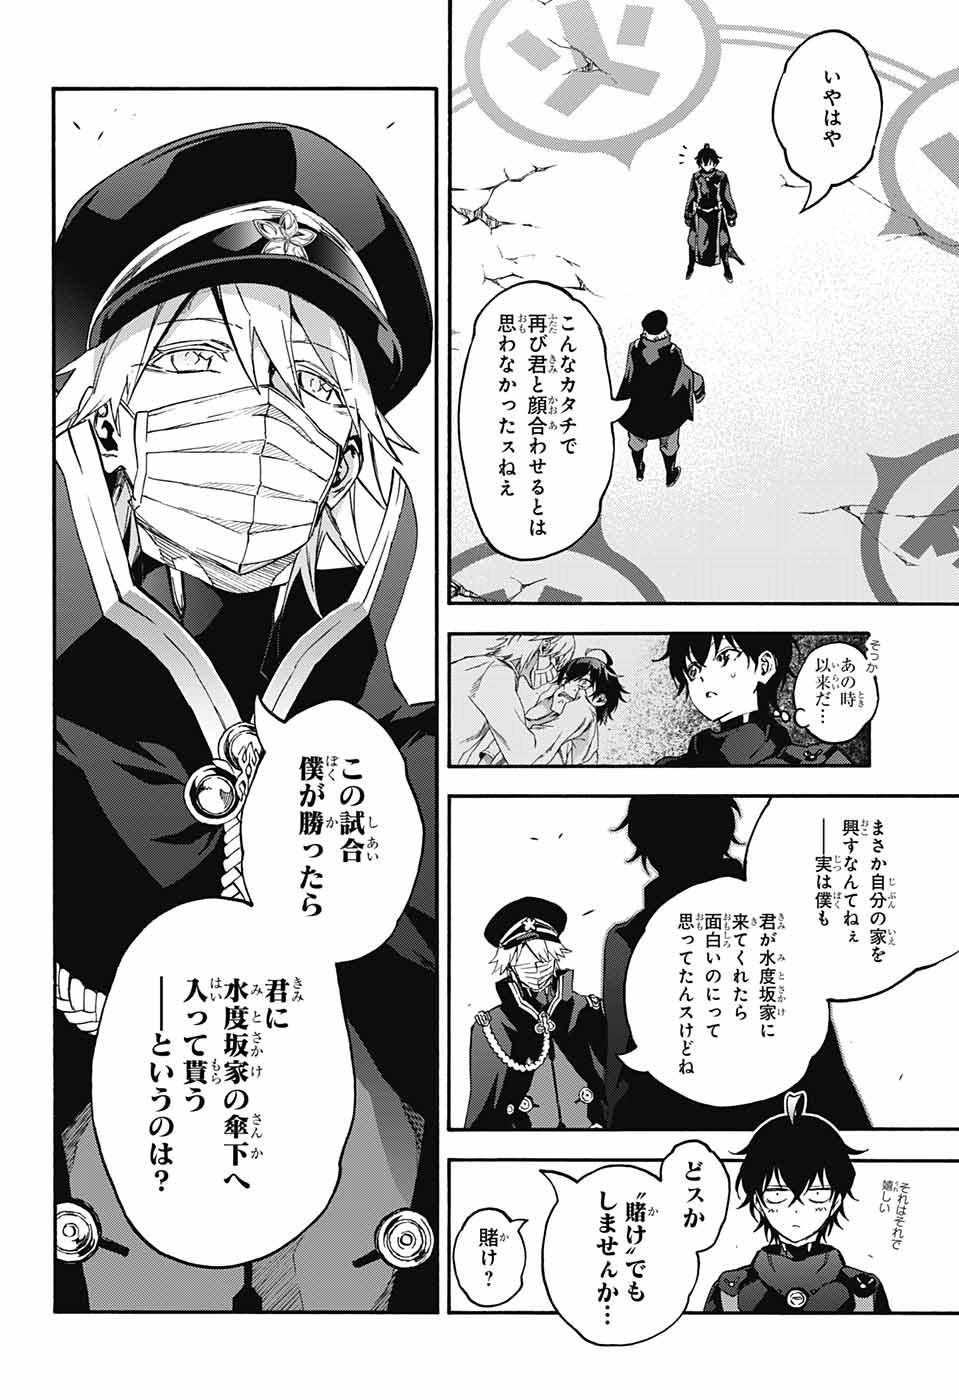 Sousei no Onmyouji - Chapter 44 - Page 4